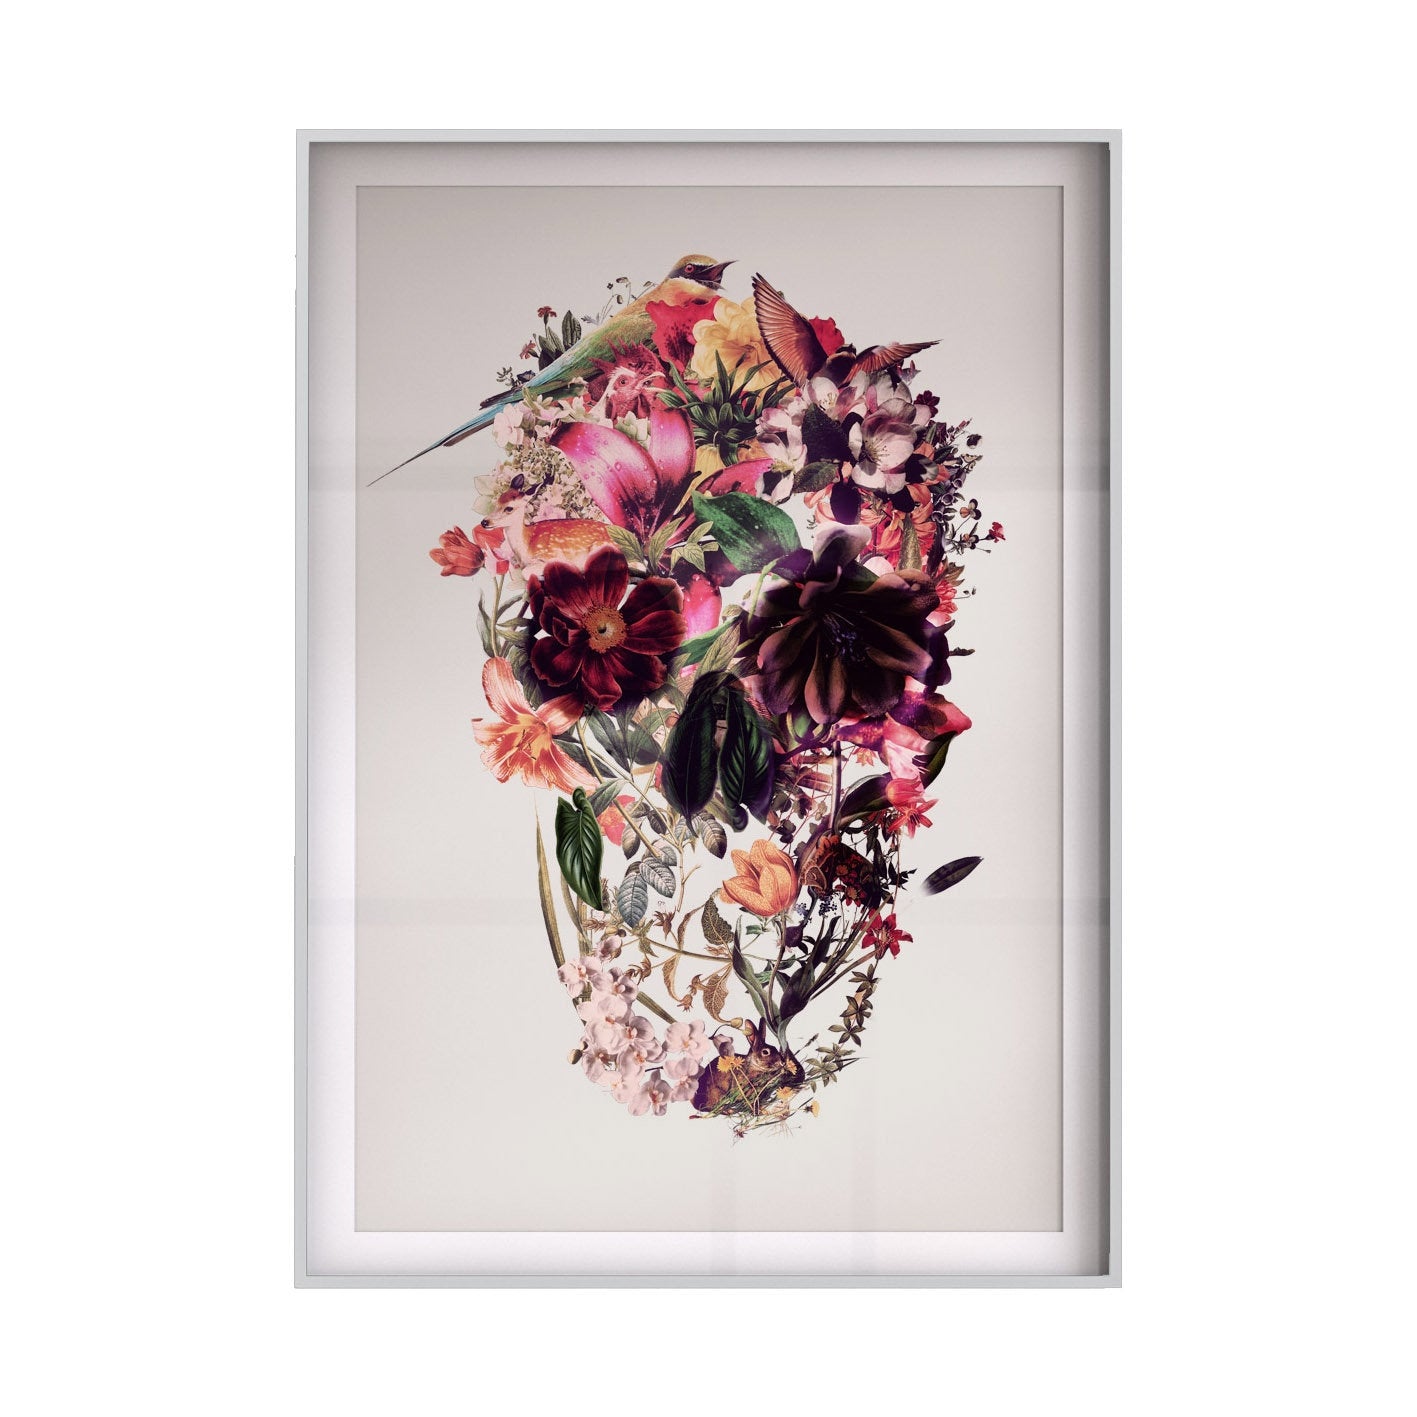 Set Of 3 Skull Art Print, Flower Skull Art Poster Set Home Decor, Sugar Skull Wall Art Gift Poster Set, Instant Download Printable Skull Art